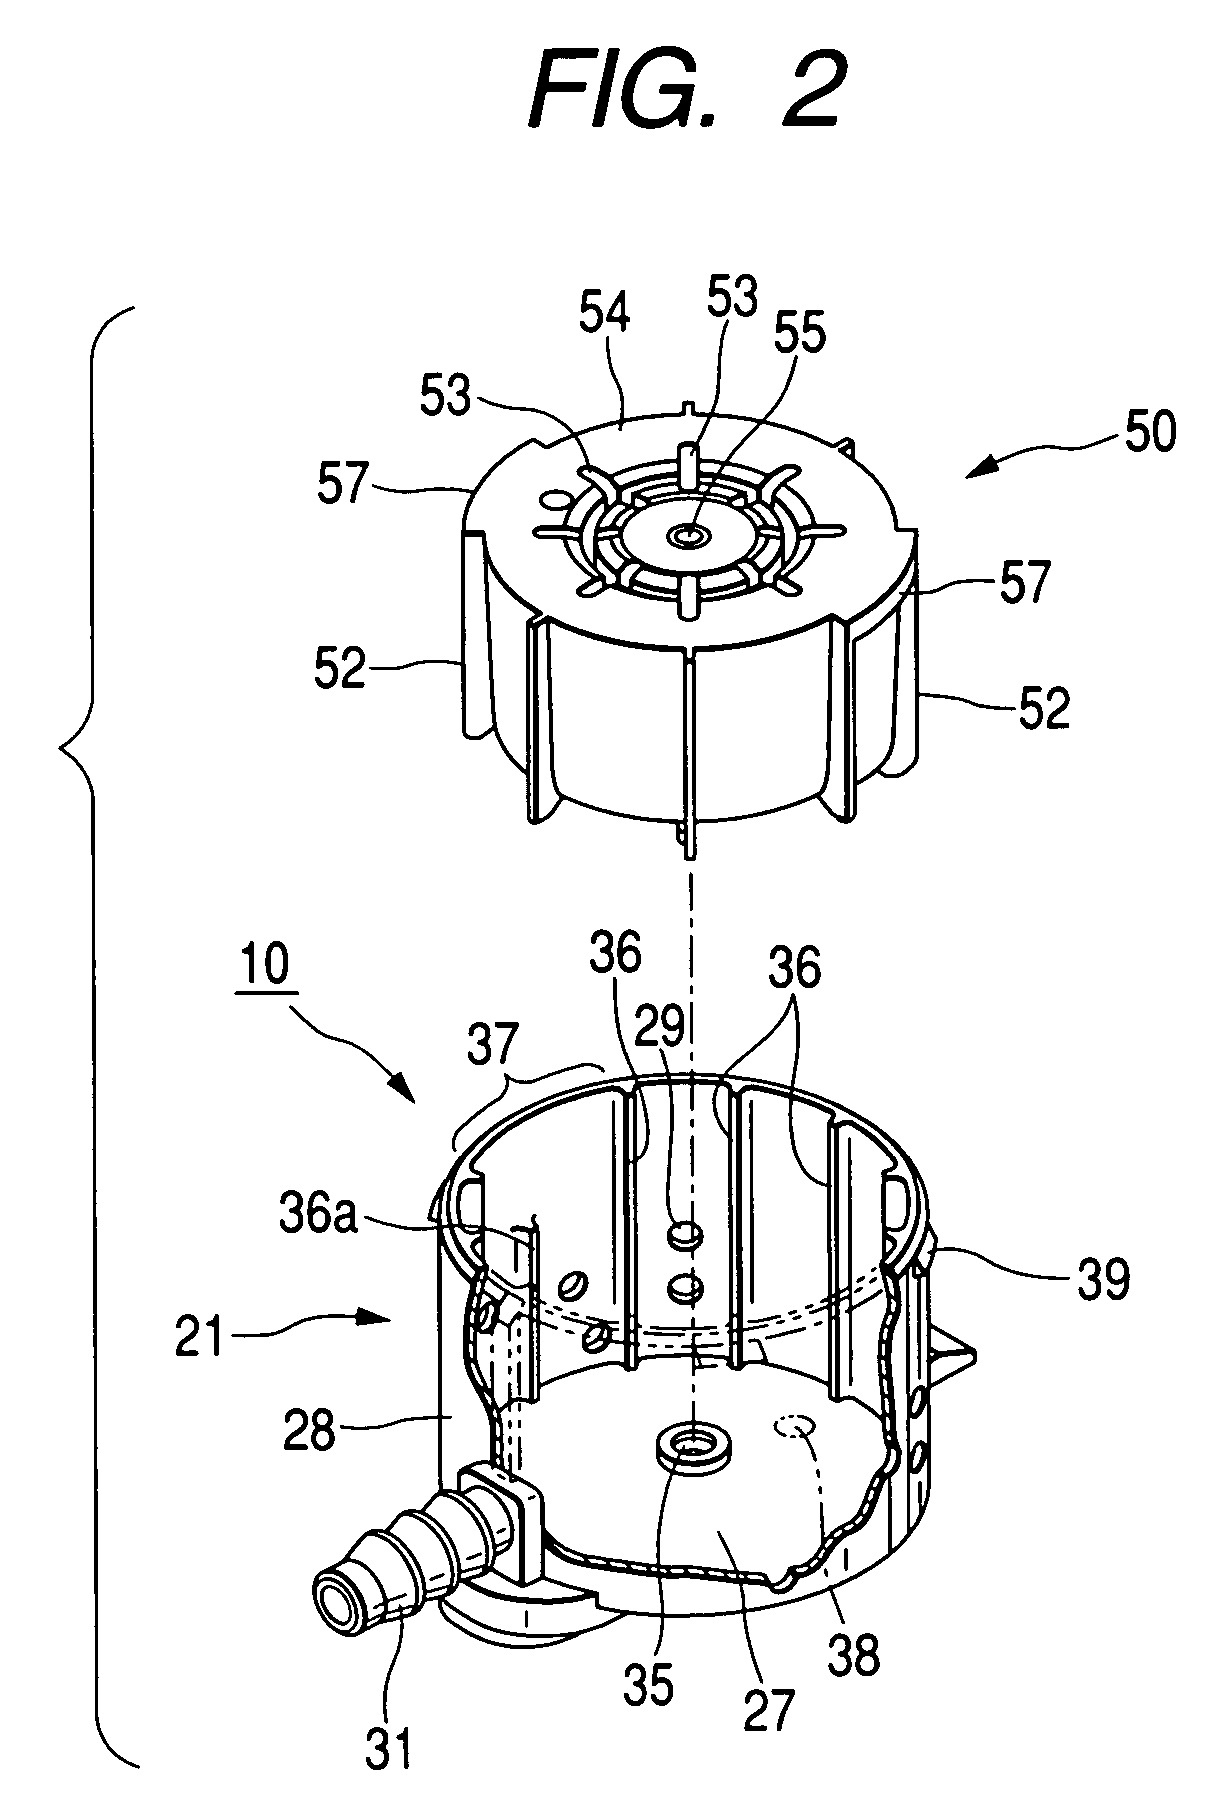 Float valve device